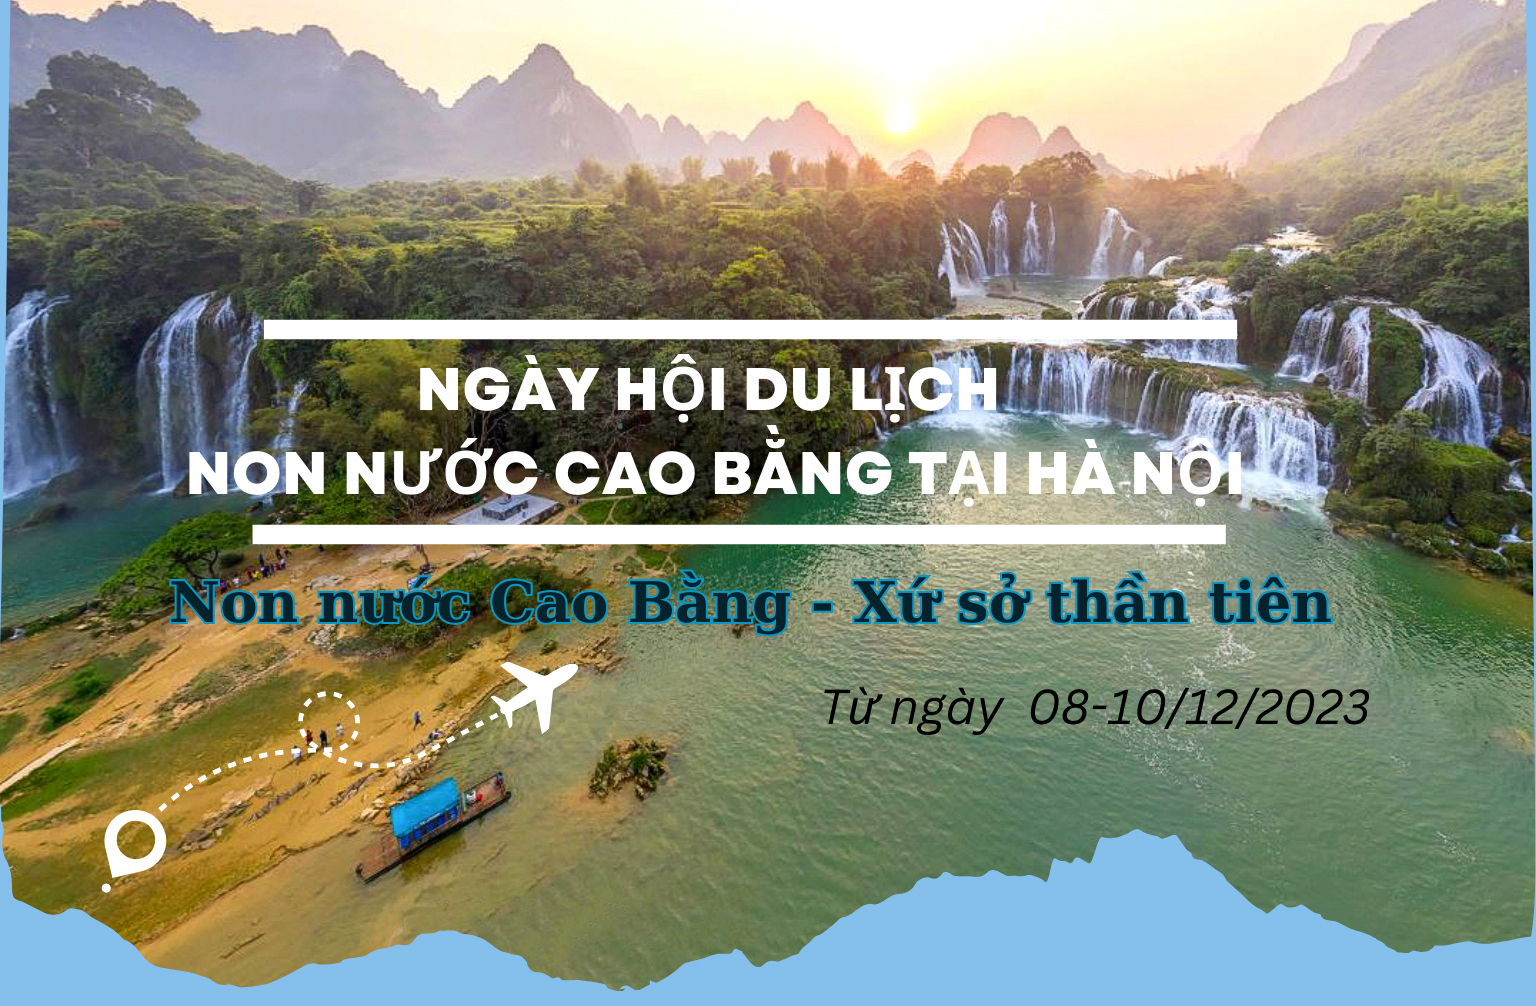 Ngày hội Du lịch Non nước Cao Bằng tại Hà Nội năm 2023 sẽ diễn ra từ ngày 08-10/12/2023